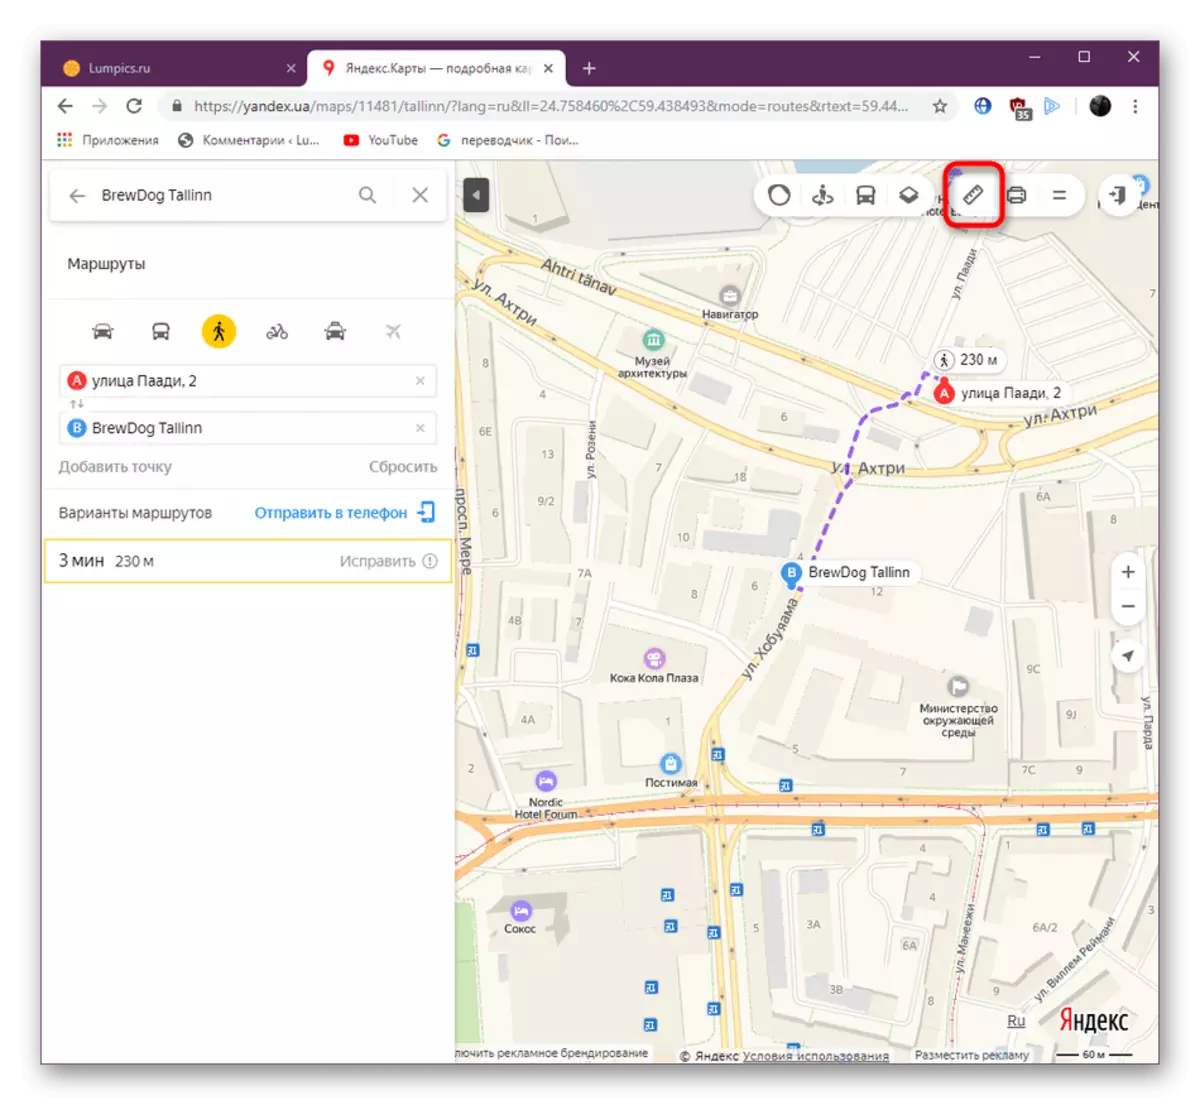 Encendiendo la regla de la herramienta en el sitio web de Yandex.Maps